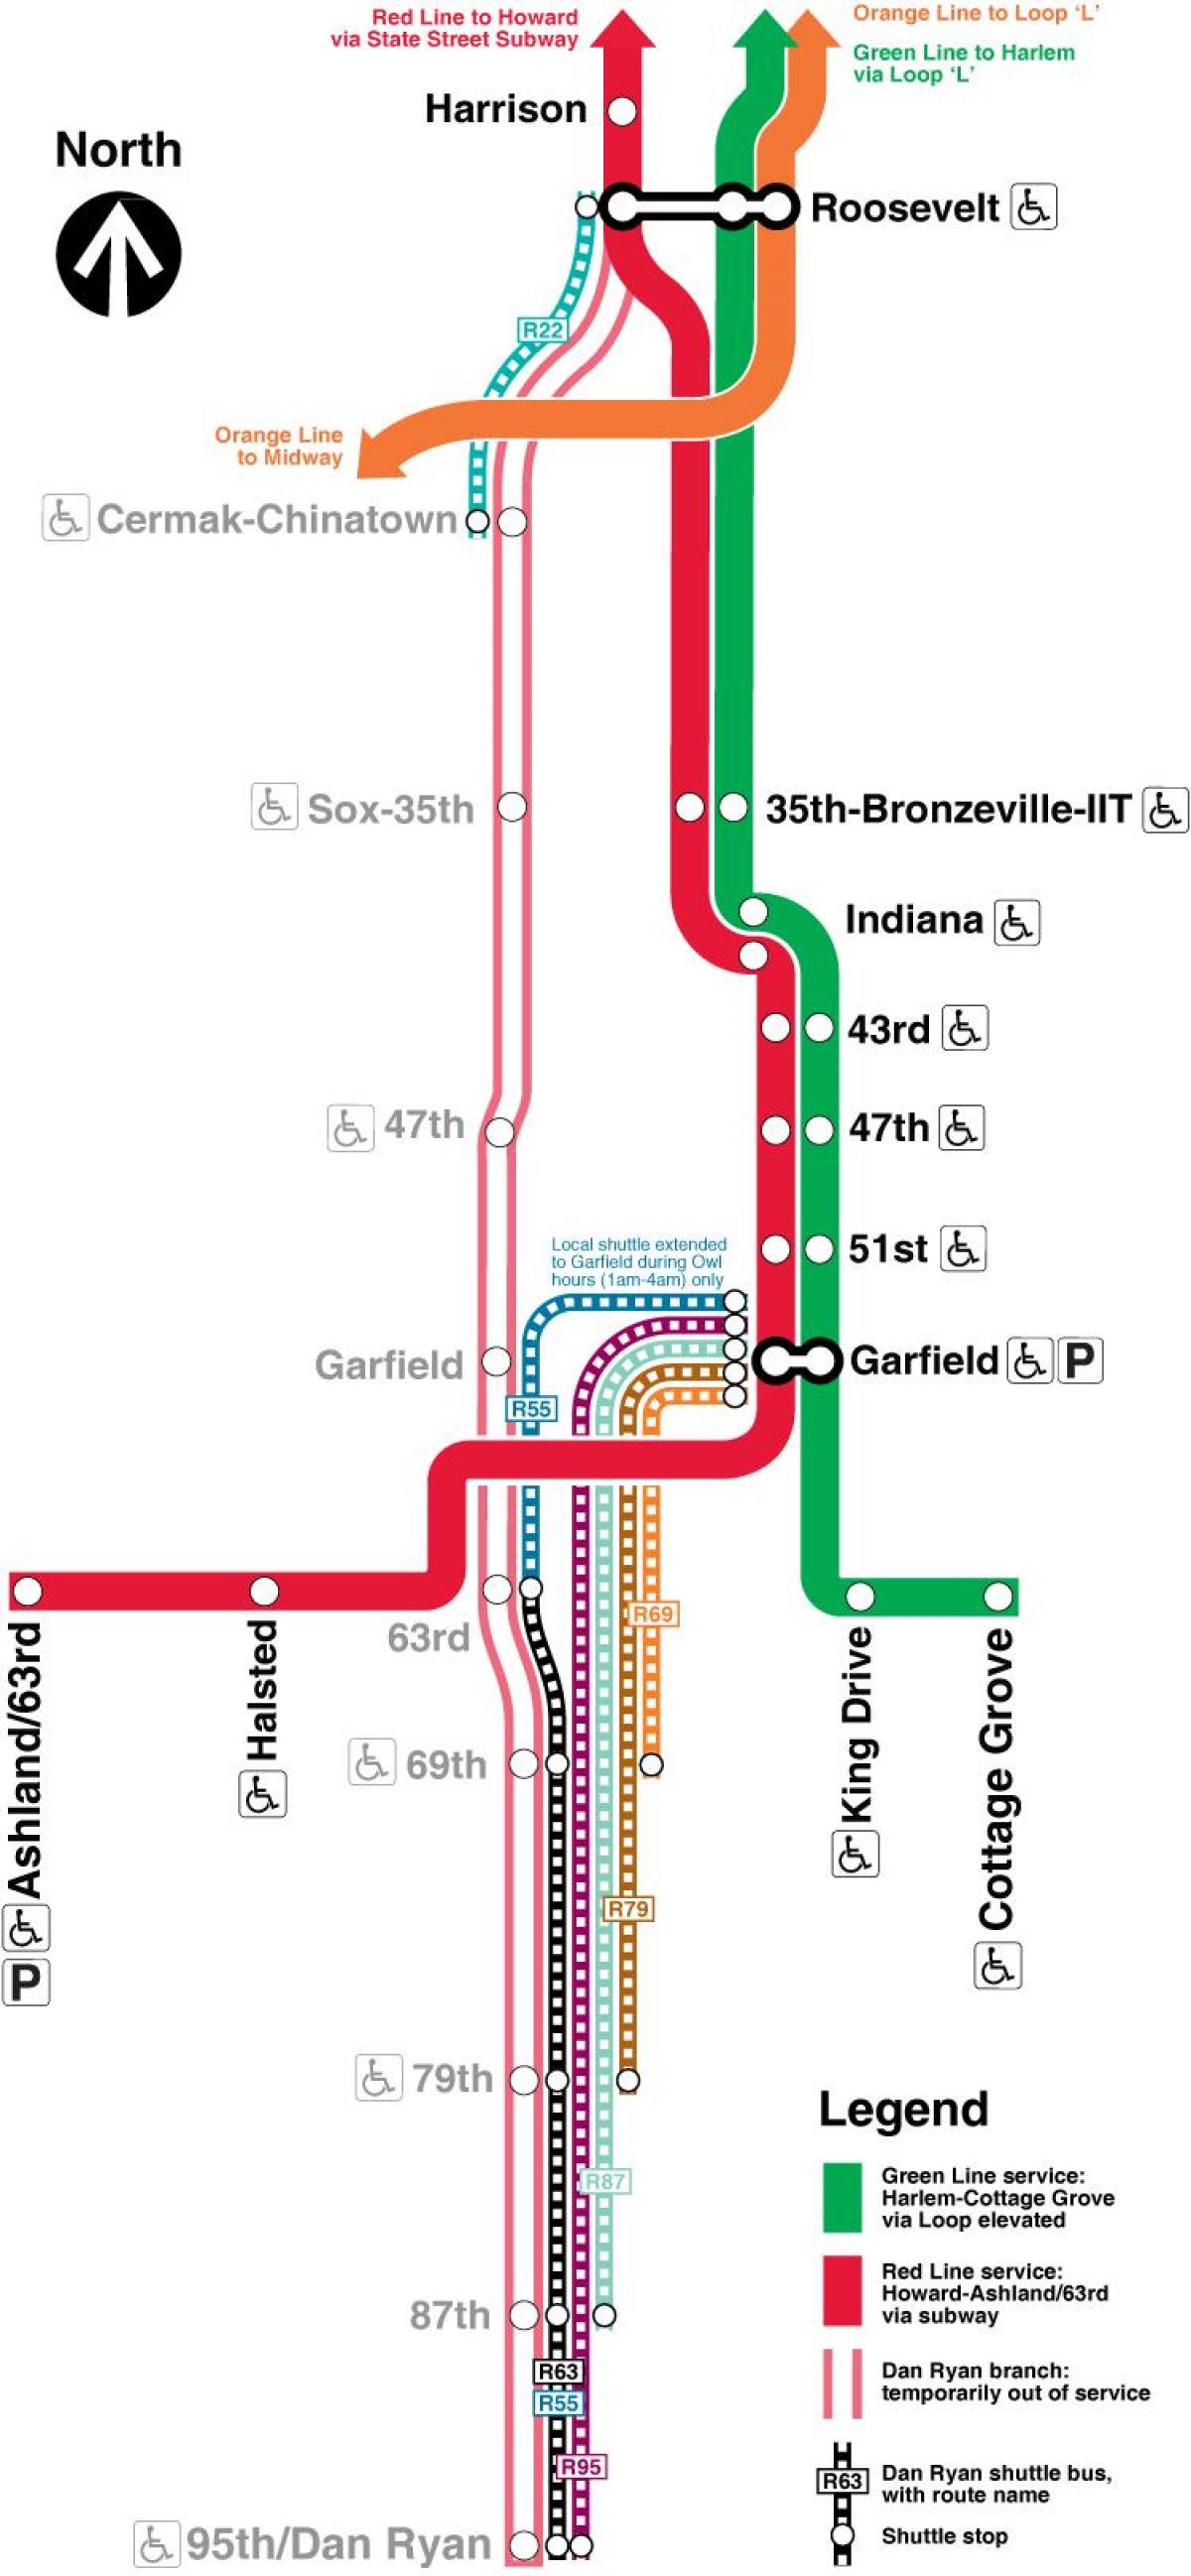 Chicago metro haritası kırmızı çizgi